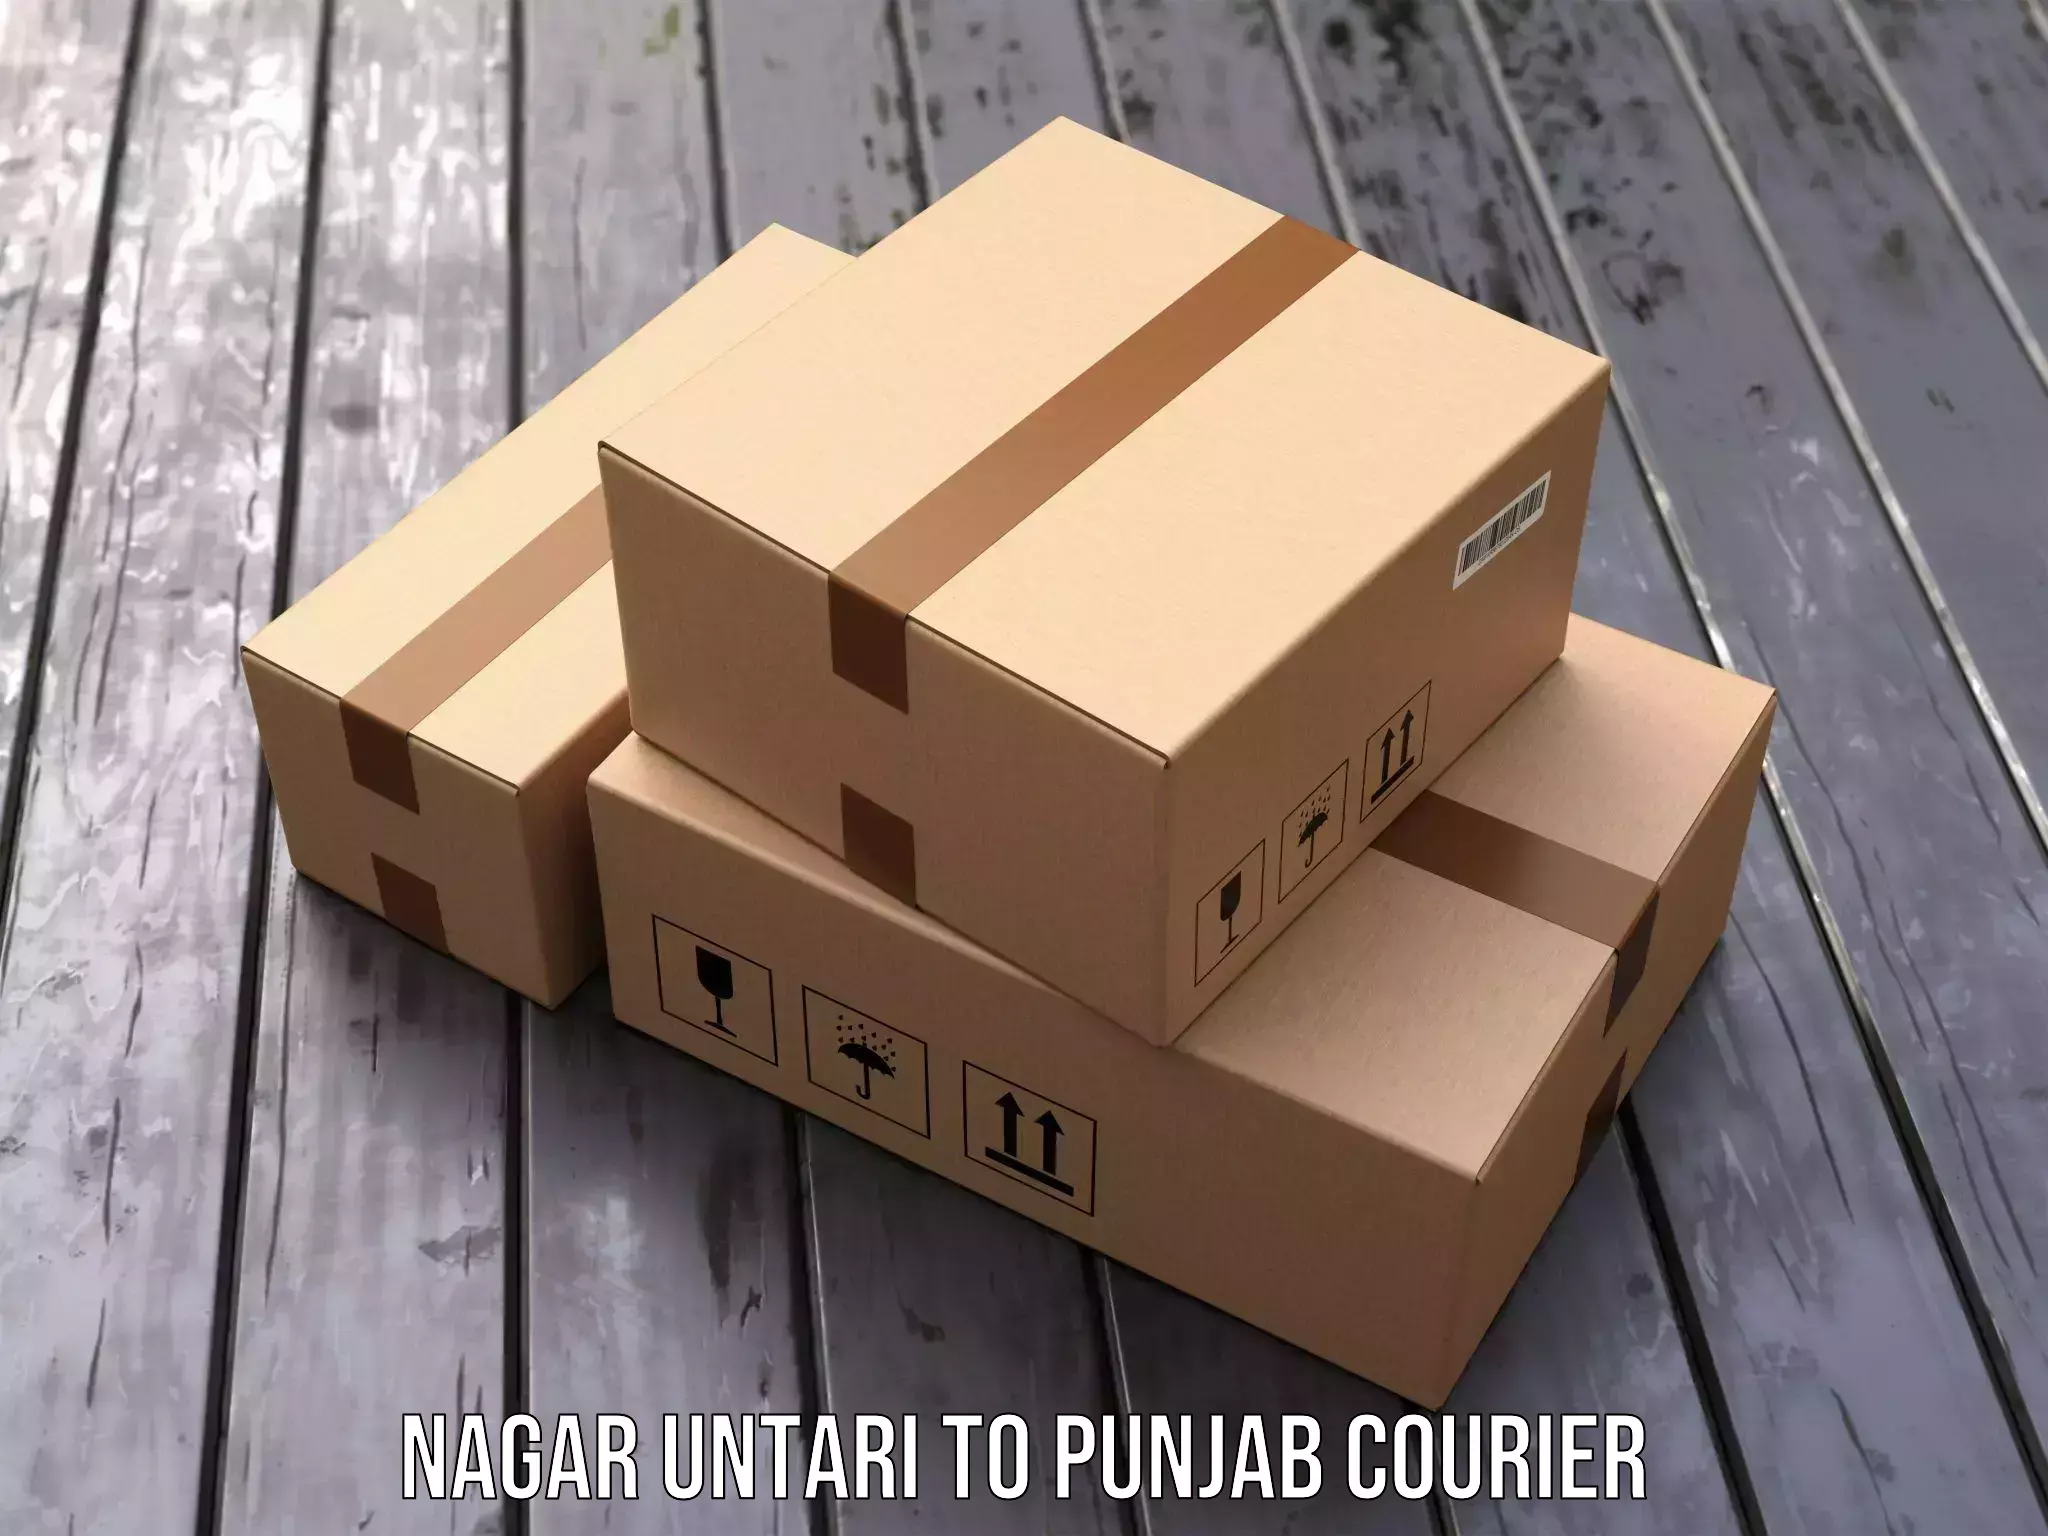 Subscription-based courier Nagar Untari to Begowal